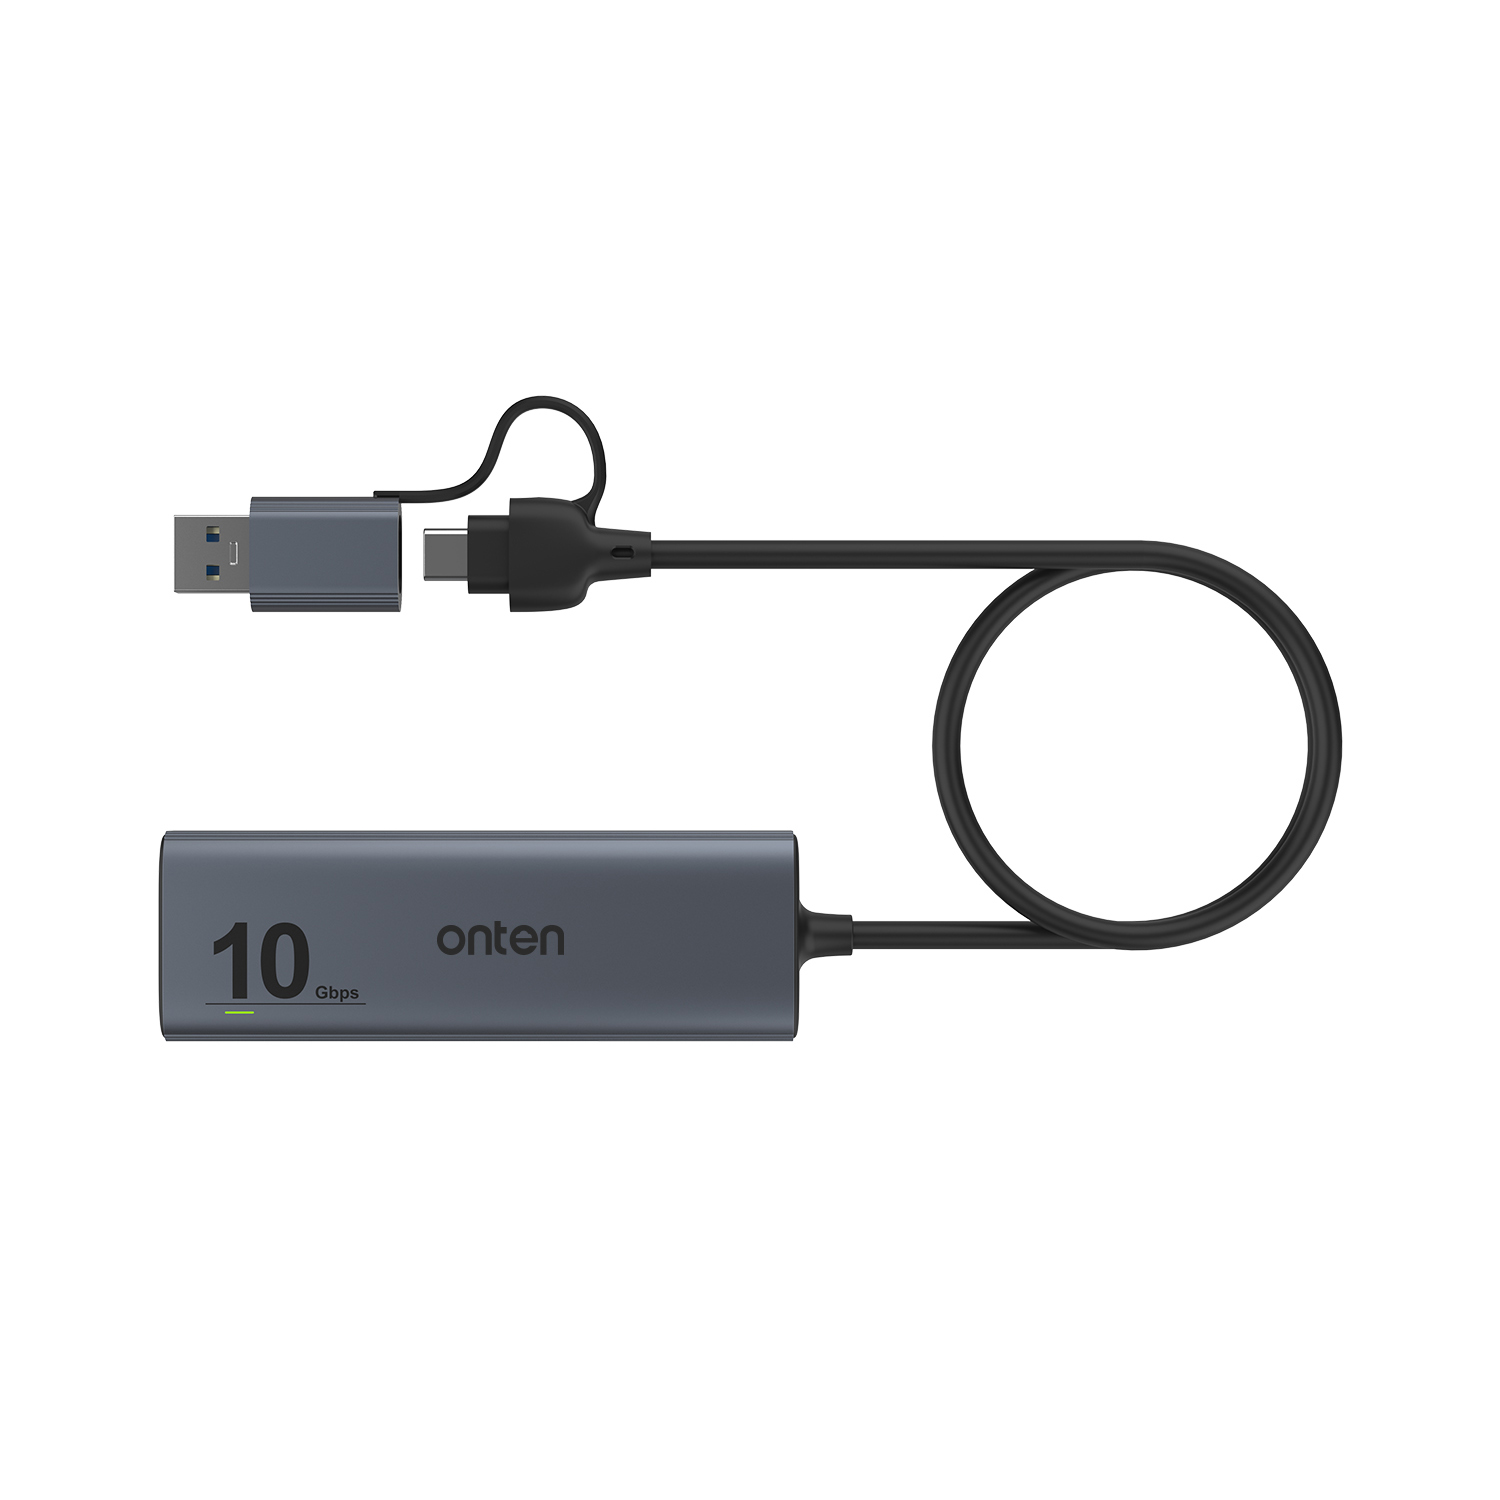 QIANRENON USB C & USB3.0 Eingebettet Auto Wasserdicht Kabel 10Gbps USB C  3.1 & USB3.0 Gewinde Befestigung Montage Kabel, PD 65W, 4K@60Hz Video,  LED-Licht, Al ehäuse, für Auto Boot Moto, 2M/6.5ft: 